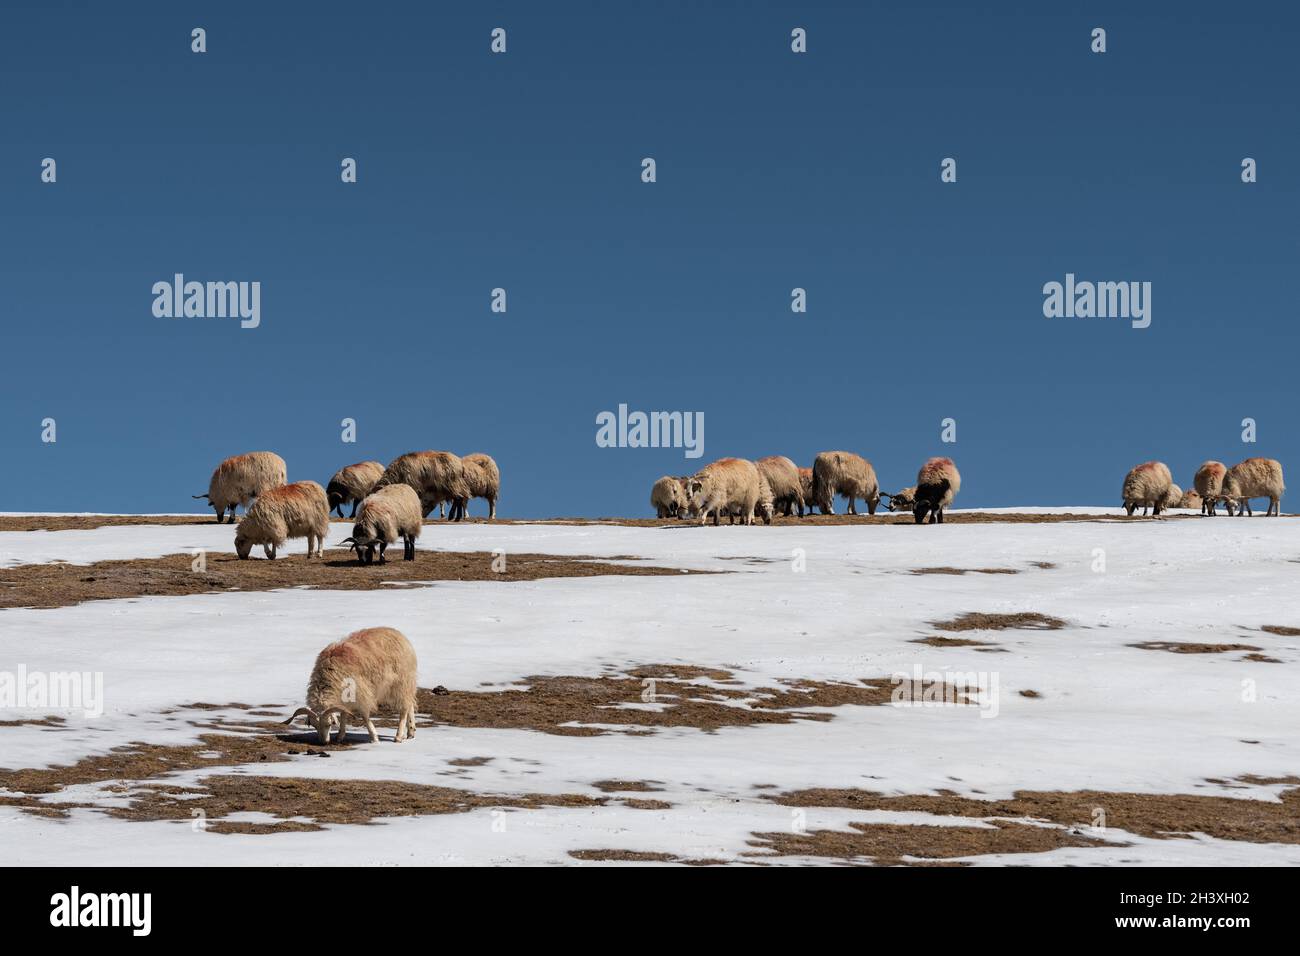 Les moutons affluent sur une colline enneigée contre un ciel bleu Banque D'Images